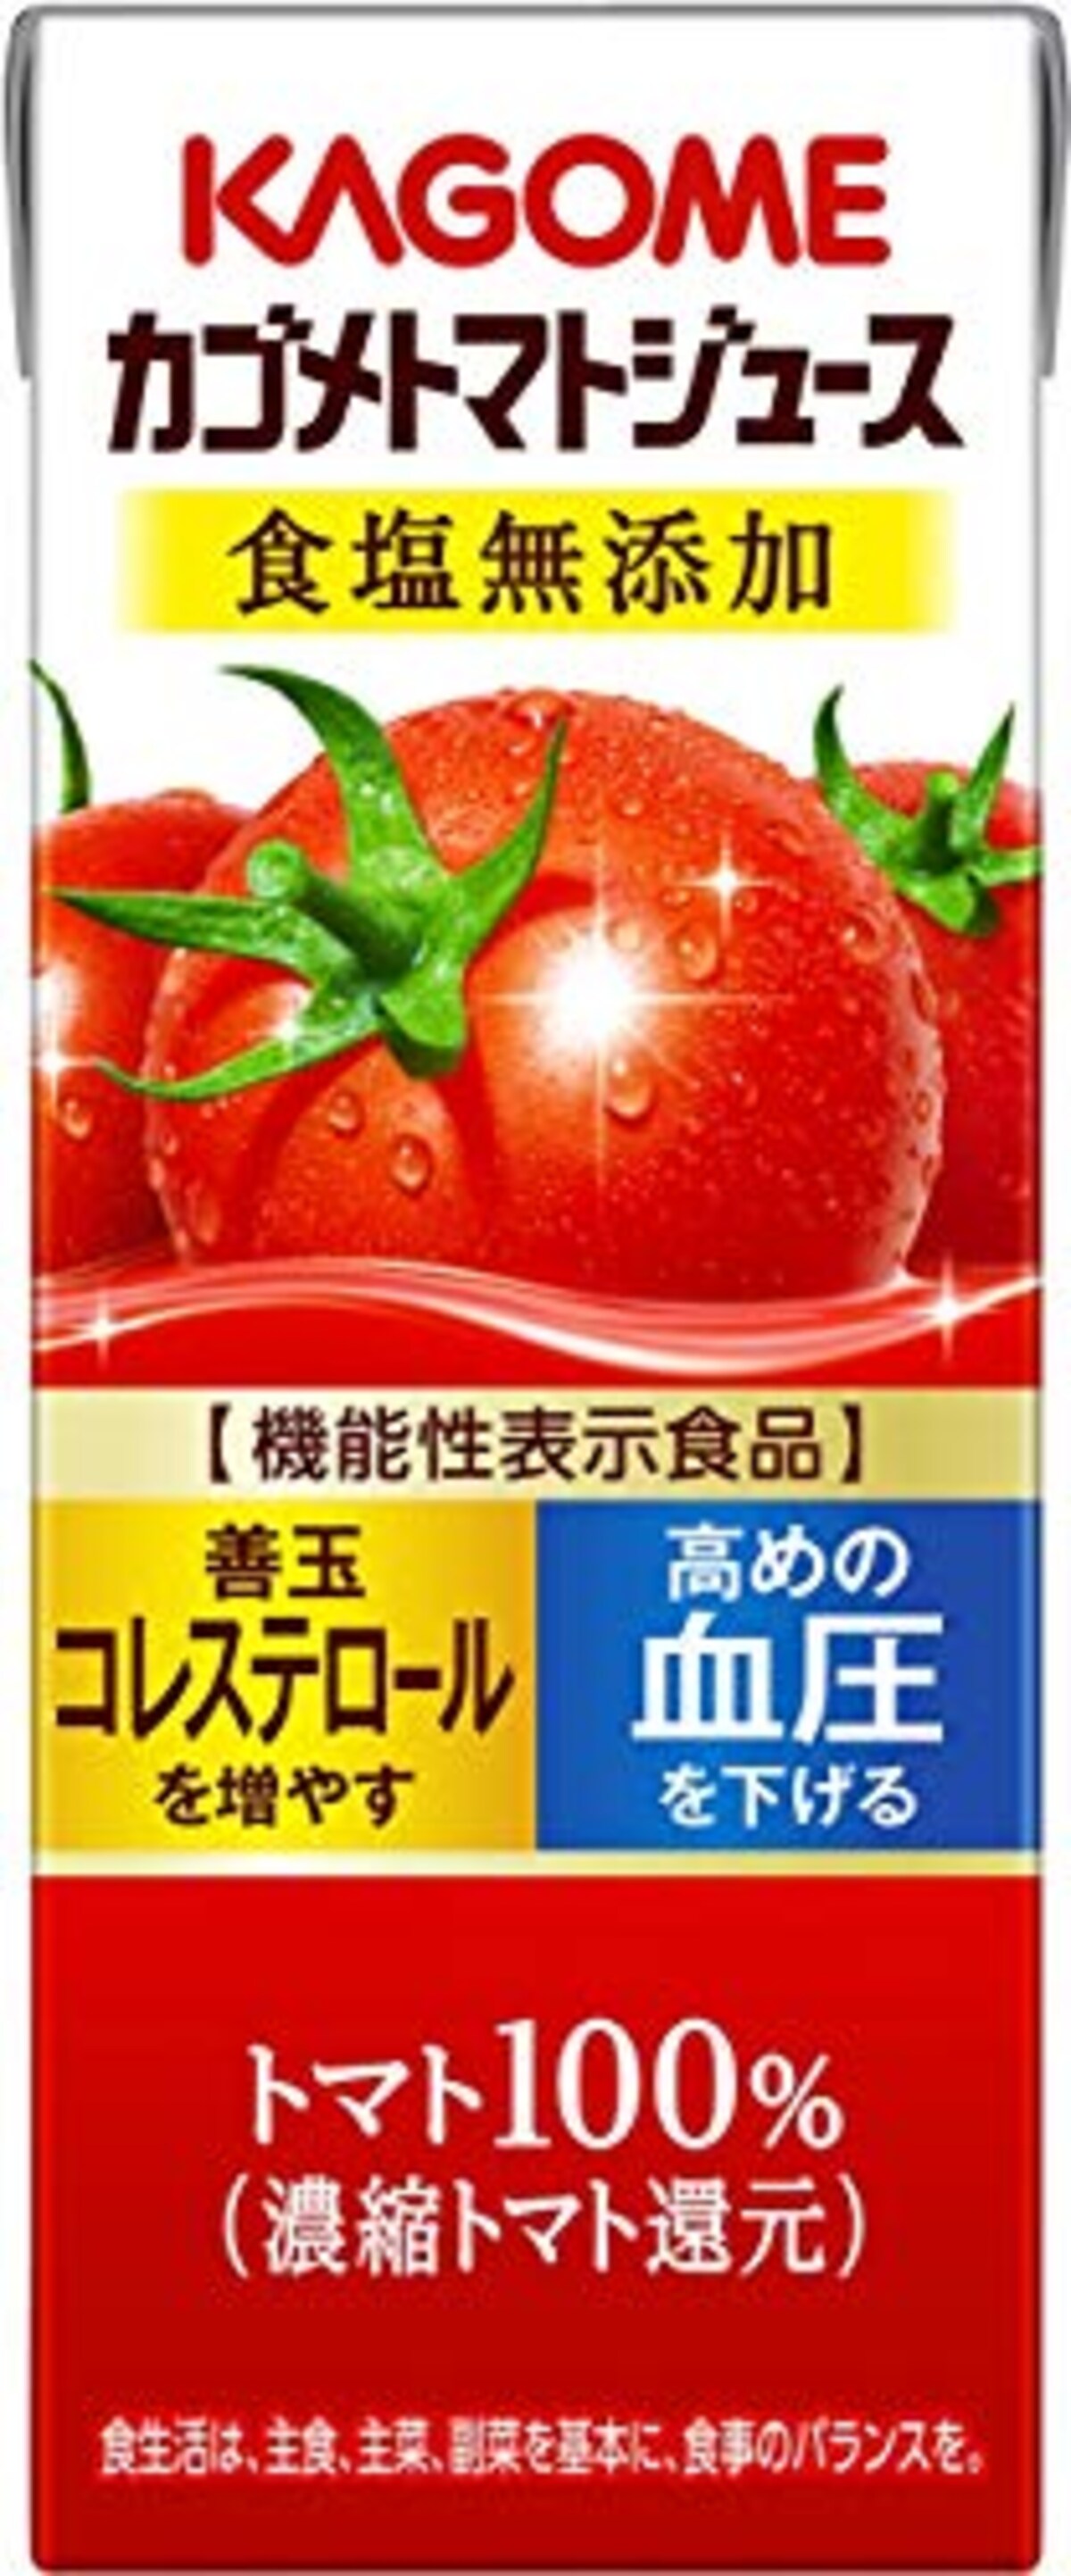 トマトジュース 食塩無添加 200ml×24本